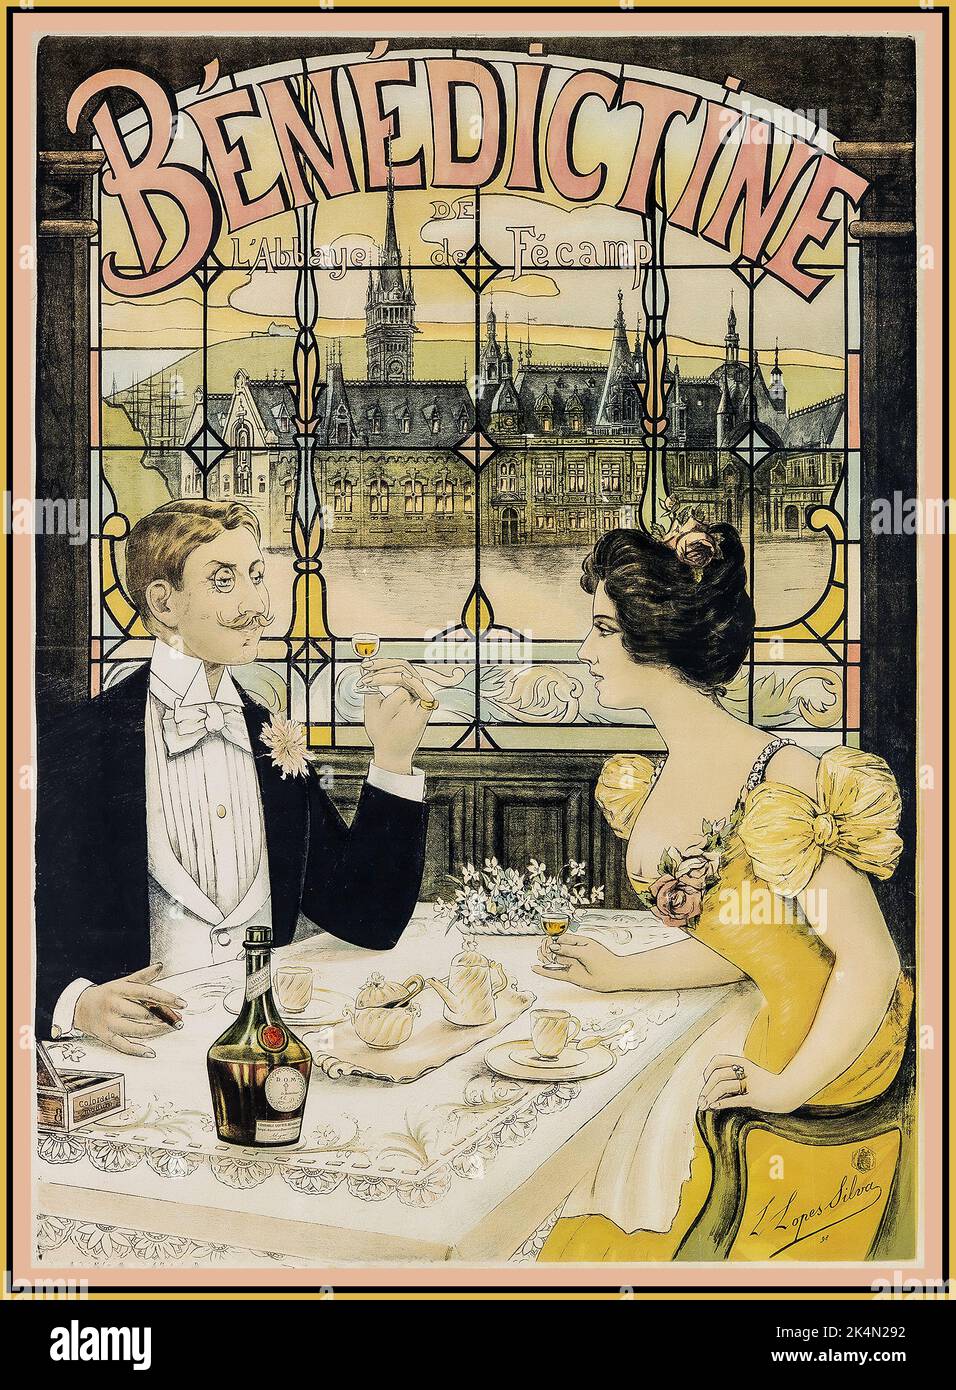 Plakat „Benediktiner“-Likör aus dem Jahr 1880s, mit einem viktorianischen Paar in luxuriösem Ambiente, das abends ein Glas Benediktiner-Likör mit Fleckglas und einem ‘BENEDIKTINER’-Fenster hinter sich genießt. Retro vintage viktorianische Getränke Alkohol Werbung. Stockfoto